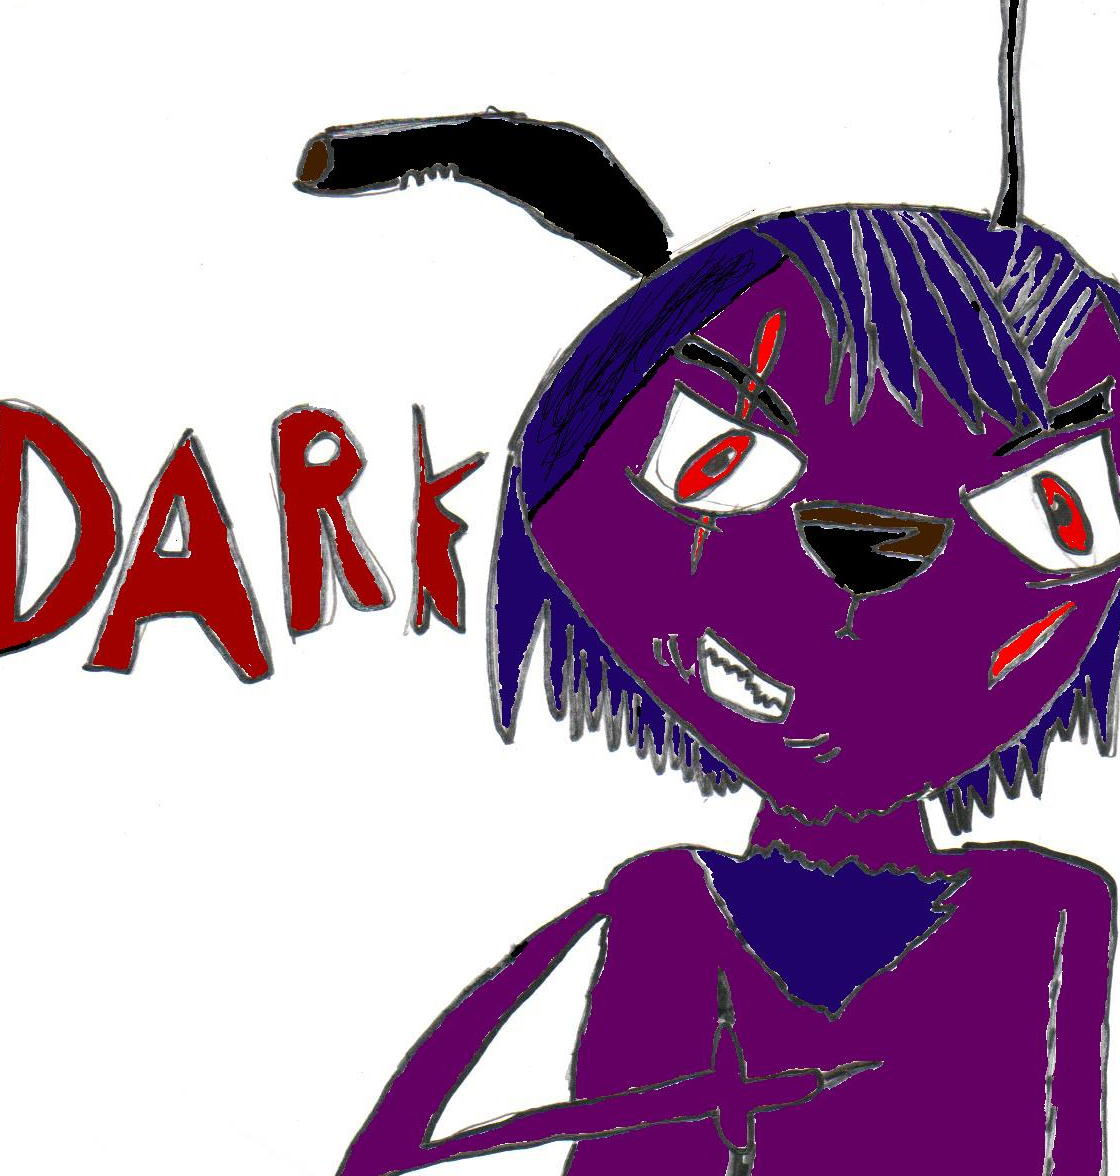 Dark The Demonic Dog by ilovetodraw